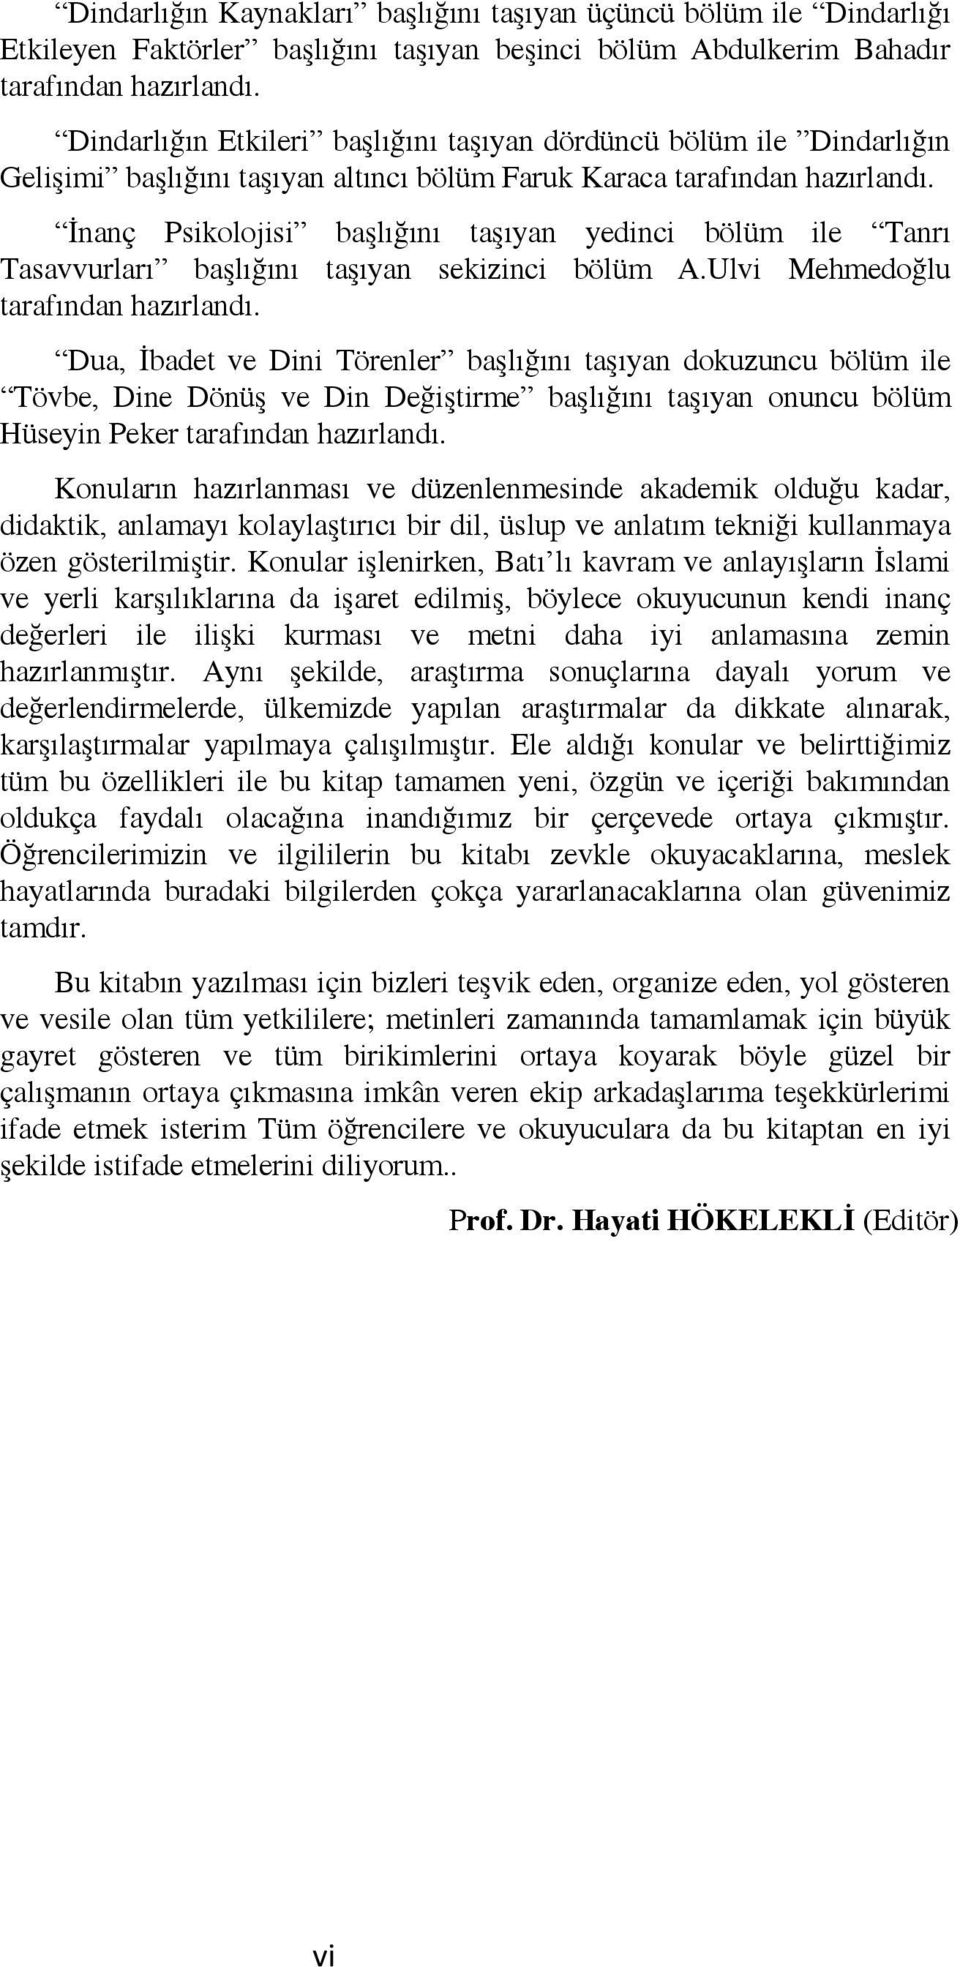 İnanç Psikolojisi başlığını taşıyan yedinci bölüm ile Tanrı Tasavvurları başlığını taşıyan sekizinci bölüm A.Ulvi Mehmedoğlu tarafından hazırlandı.